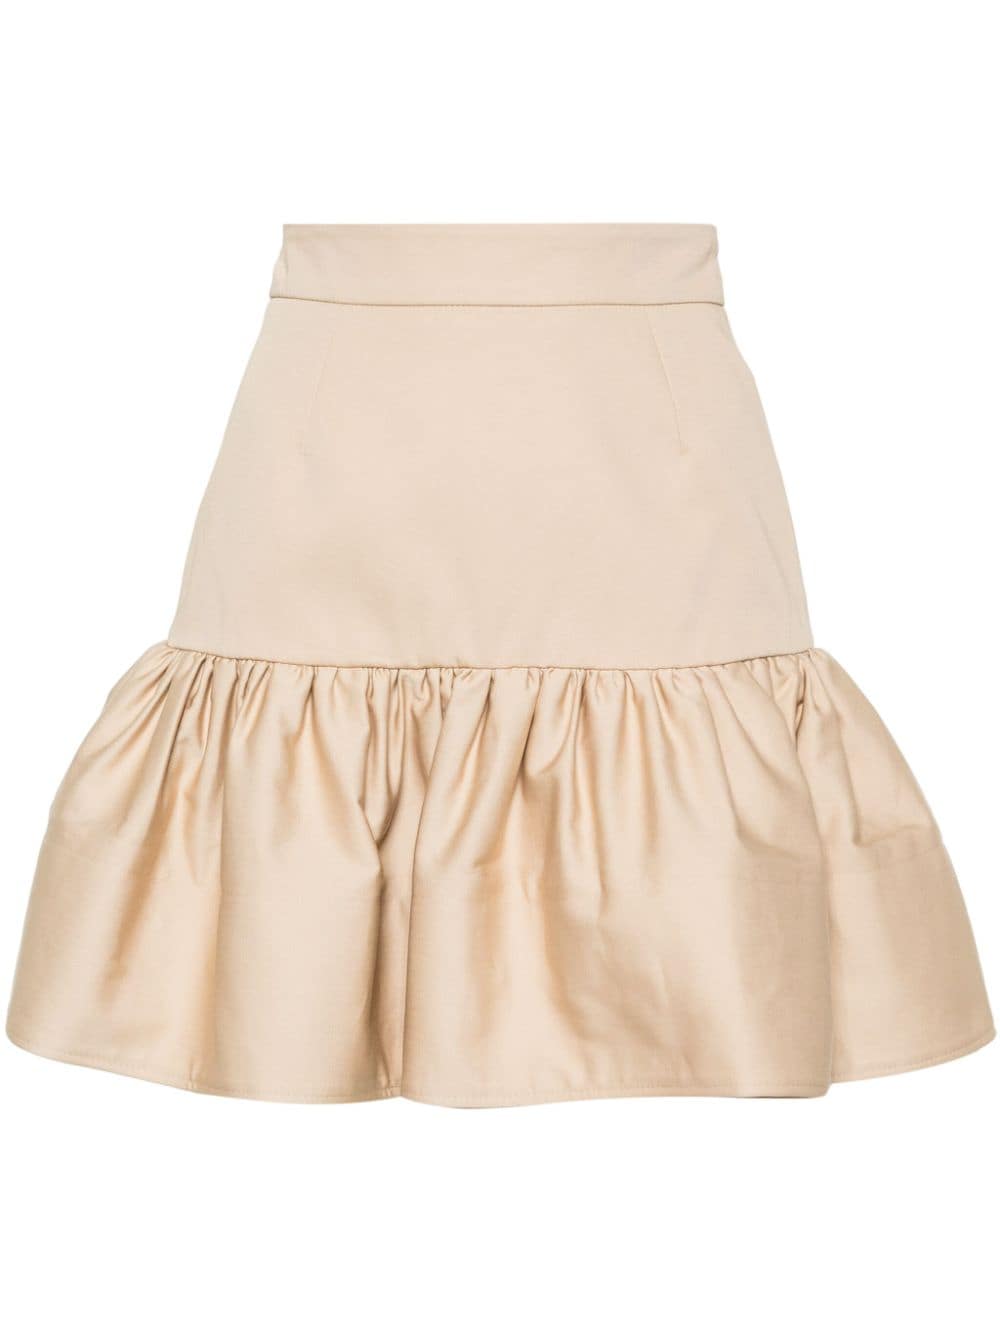 Patou ruffled cotton miniskirt - Neutrals von Patou